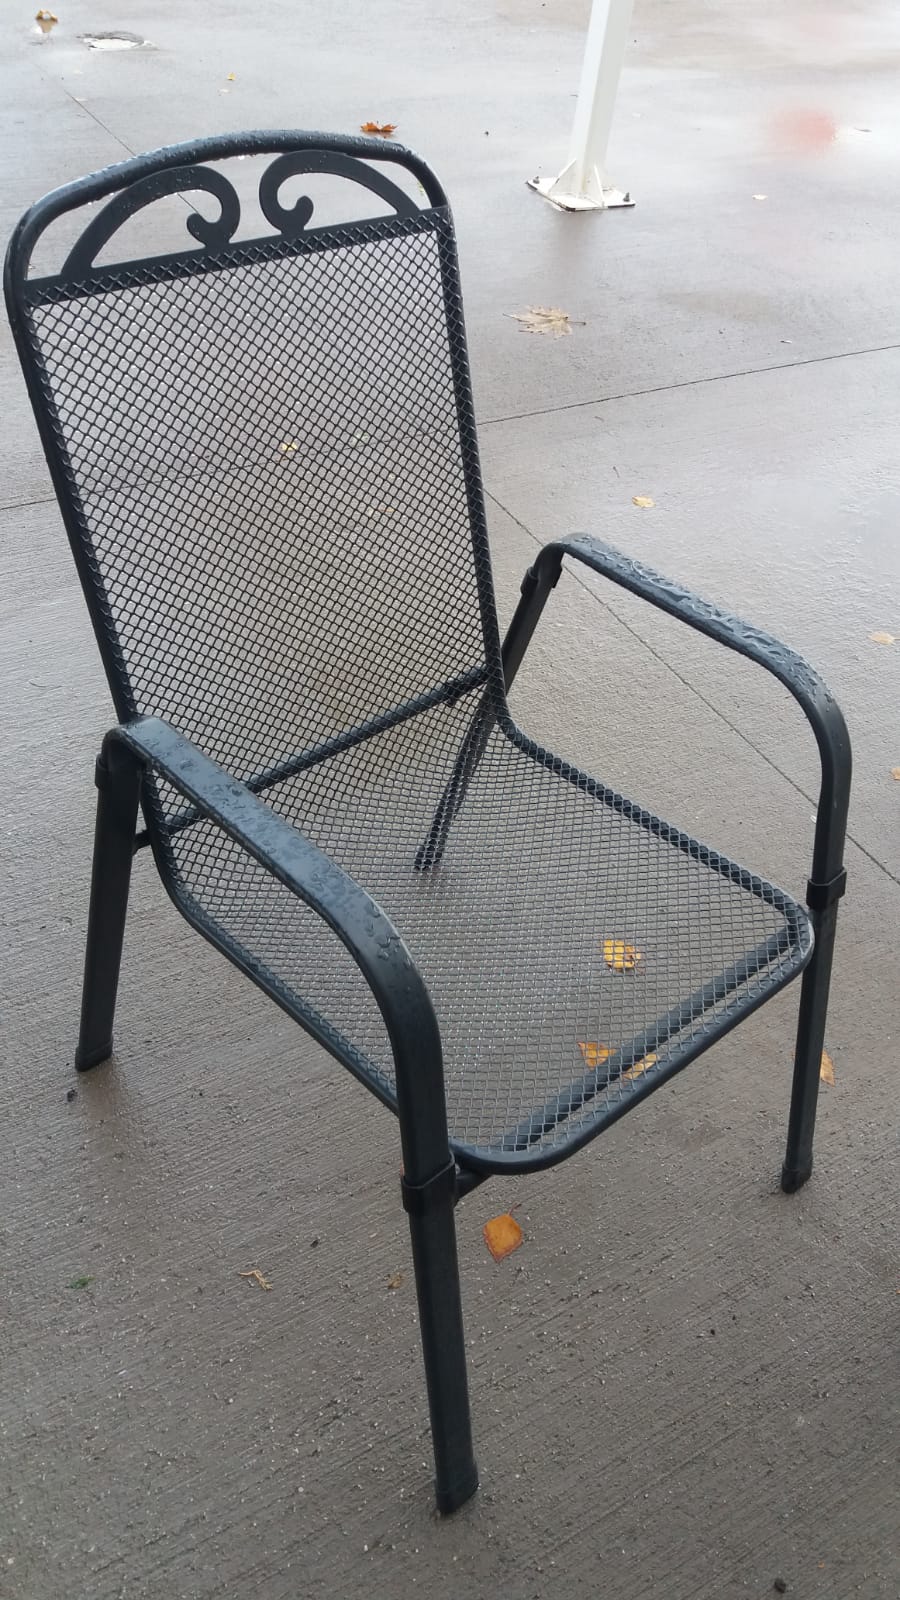 Satılık Metal Sandalye Alman Malı